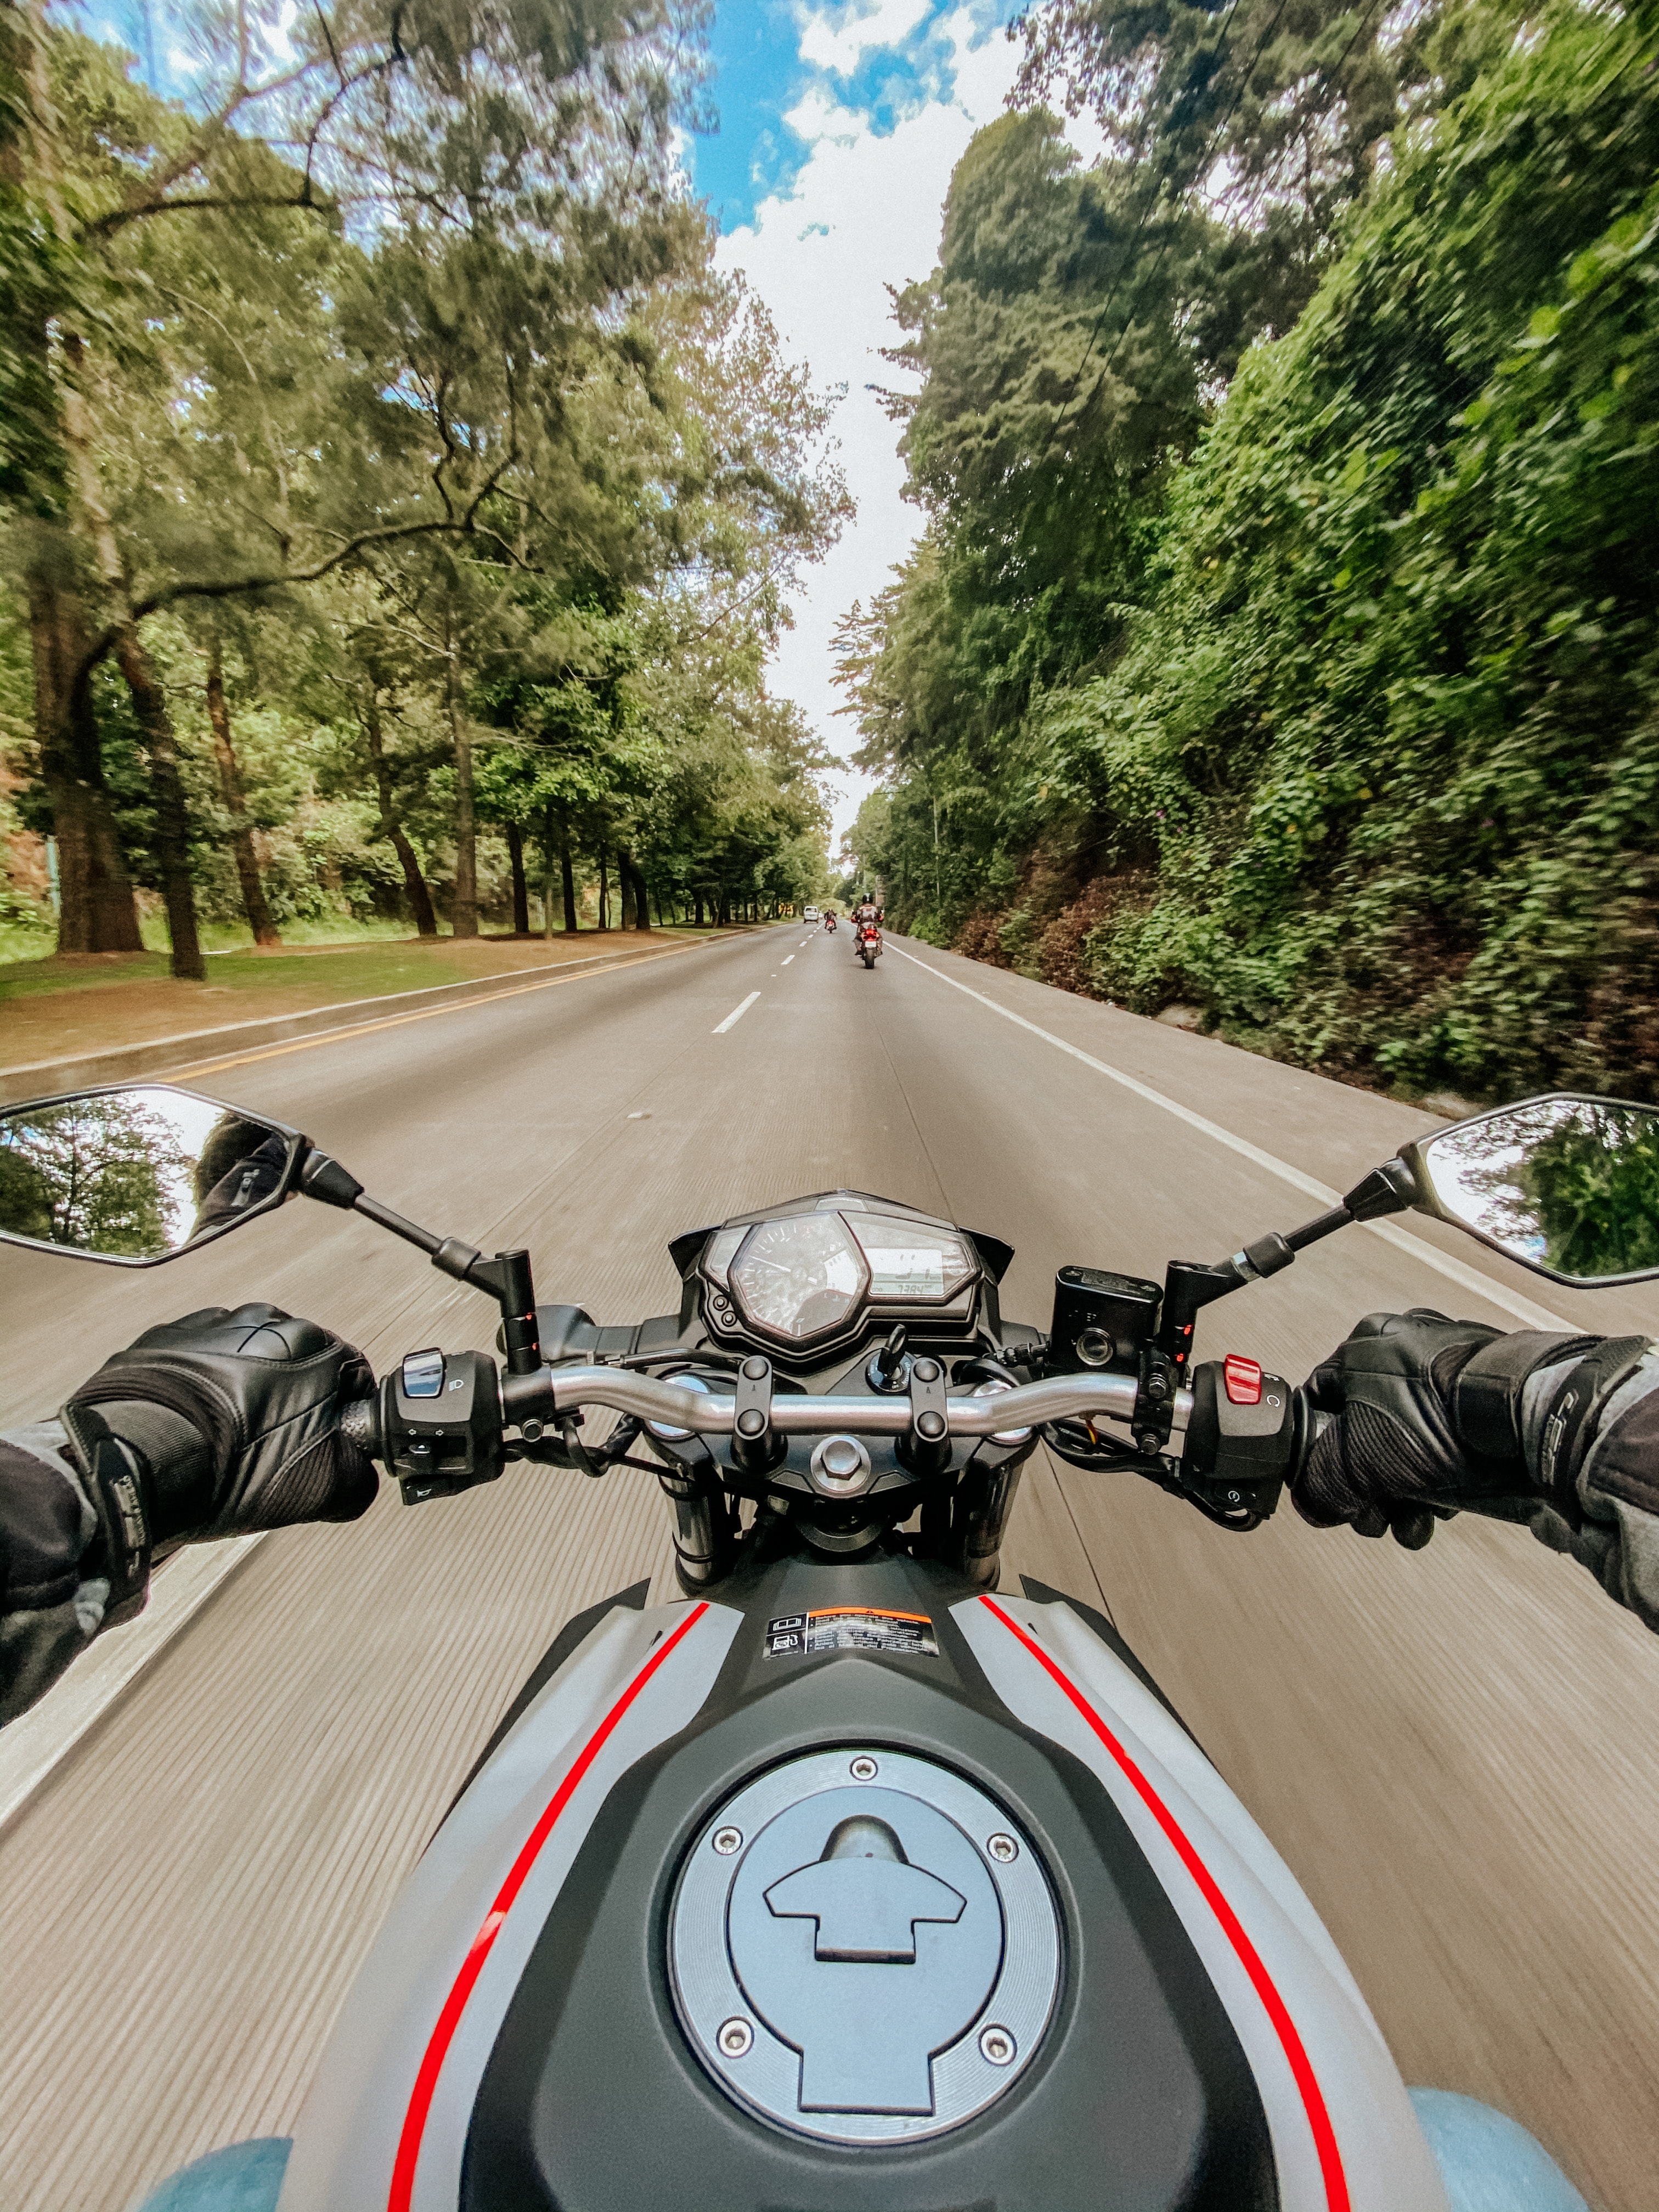 bike, motorcycle, motorcycles, speed, road